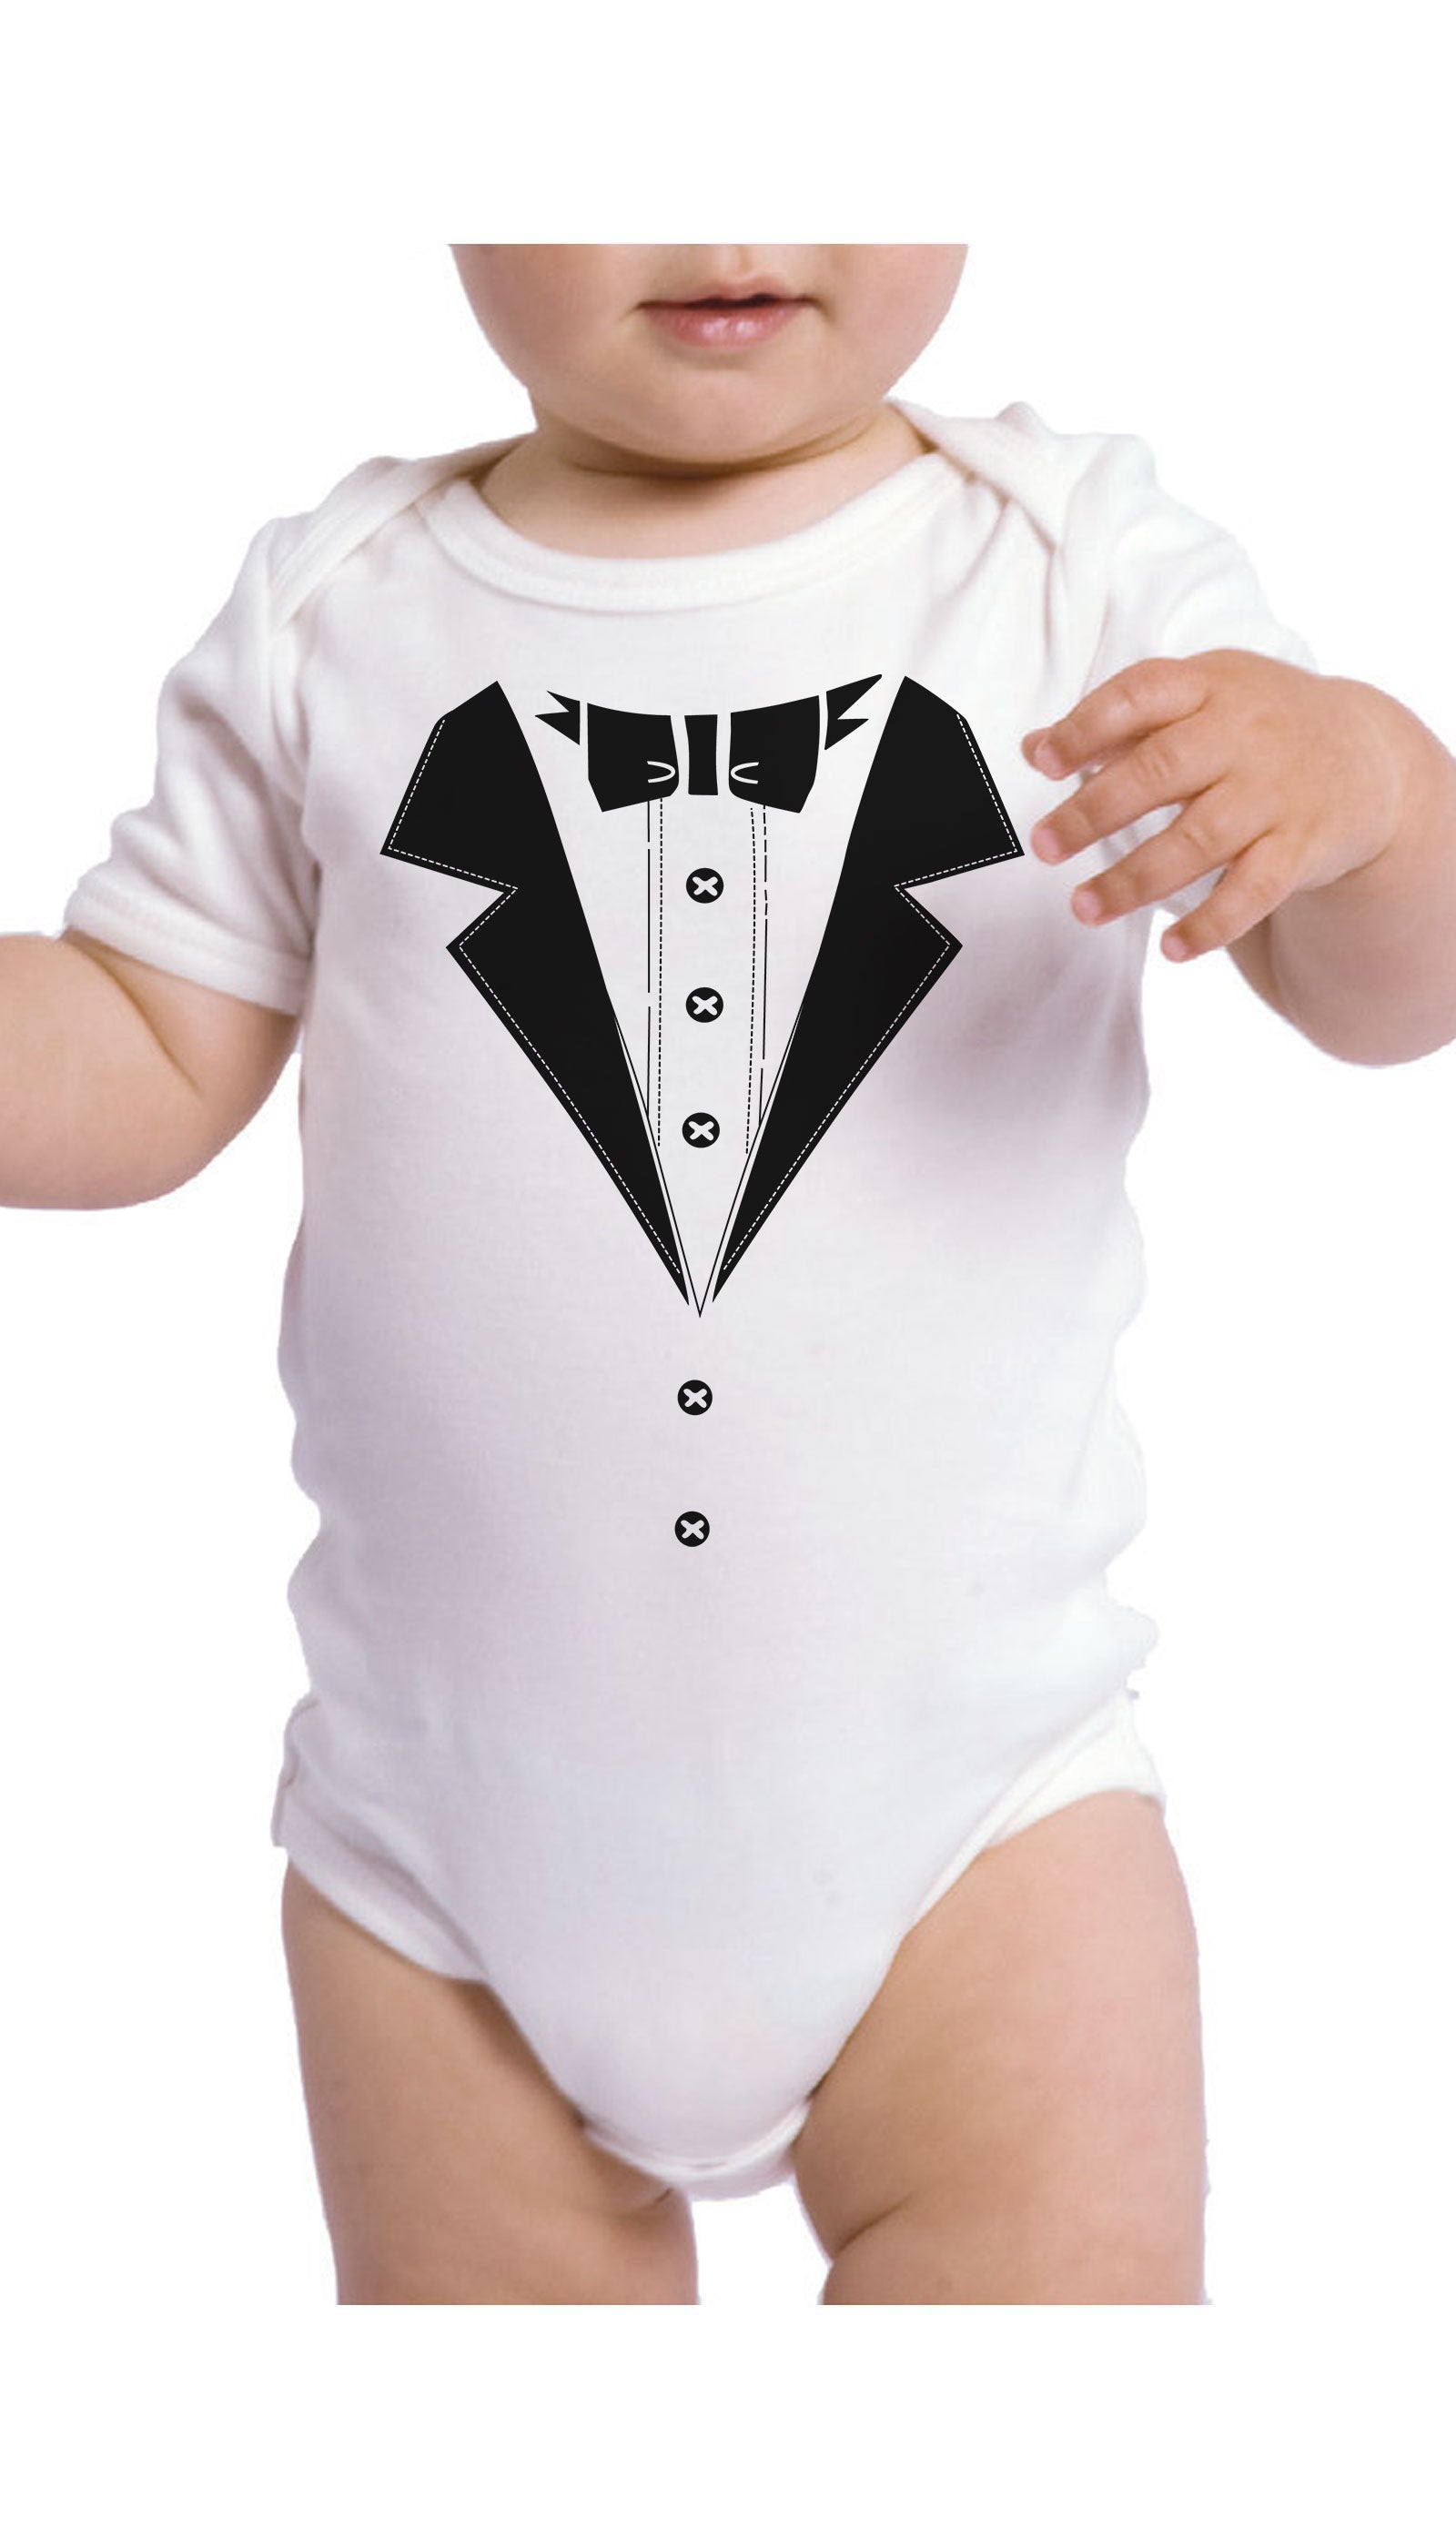 Tuxedo Infant Onesie